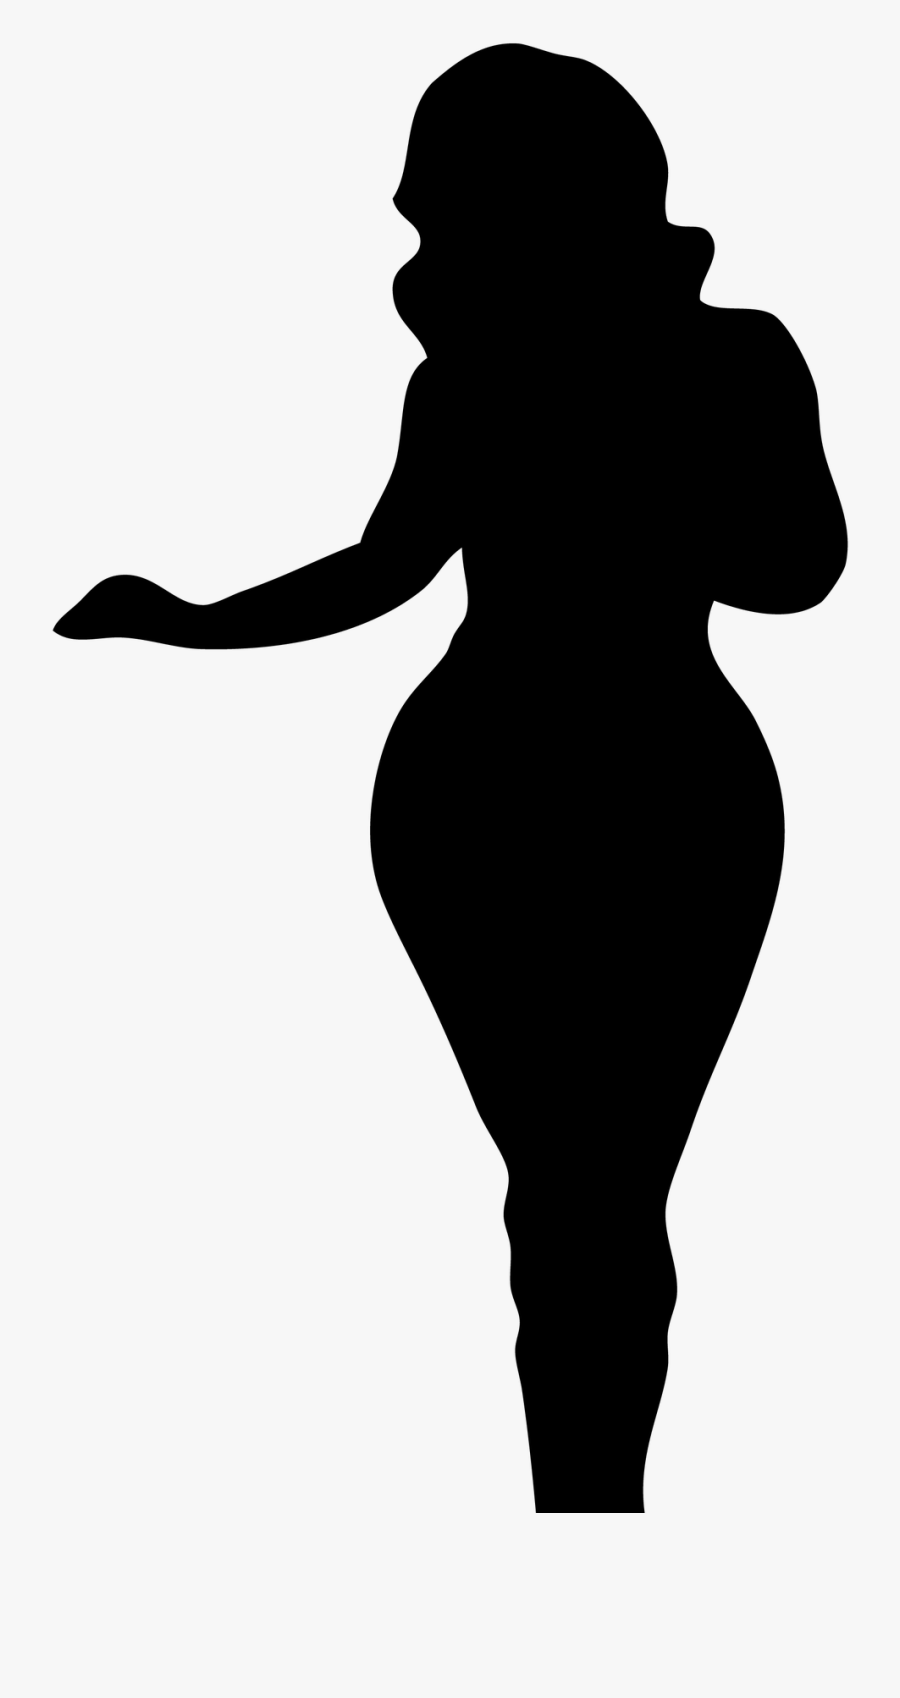 Black Woman Silhouette Clip Art - Curvy Black Woman Silhouette, Transparent Clipart